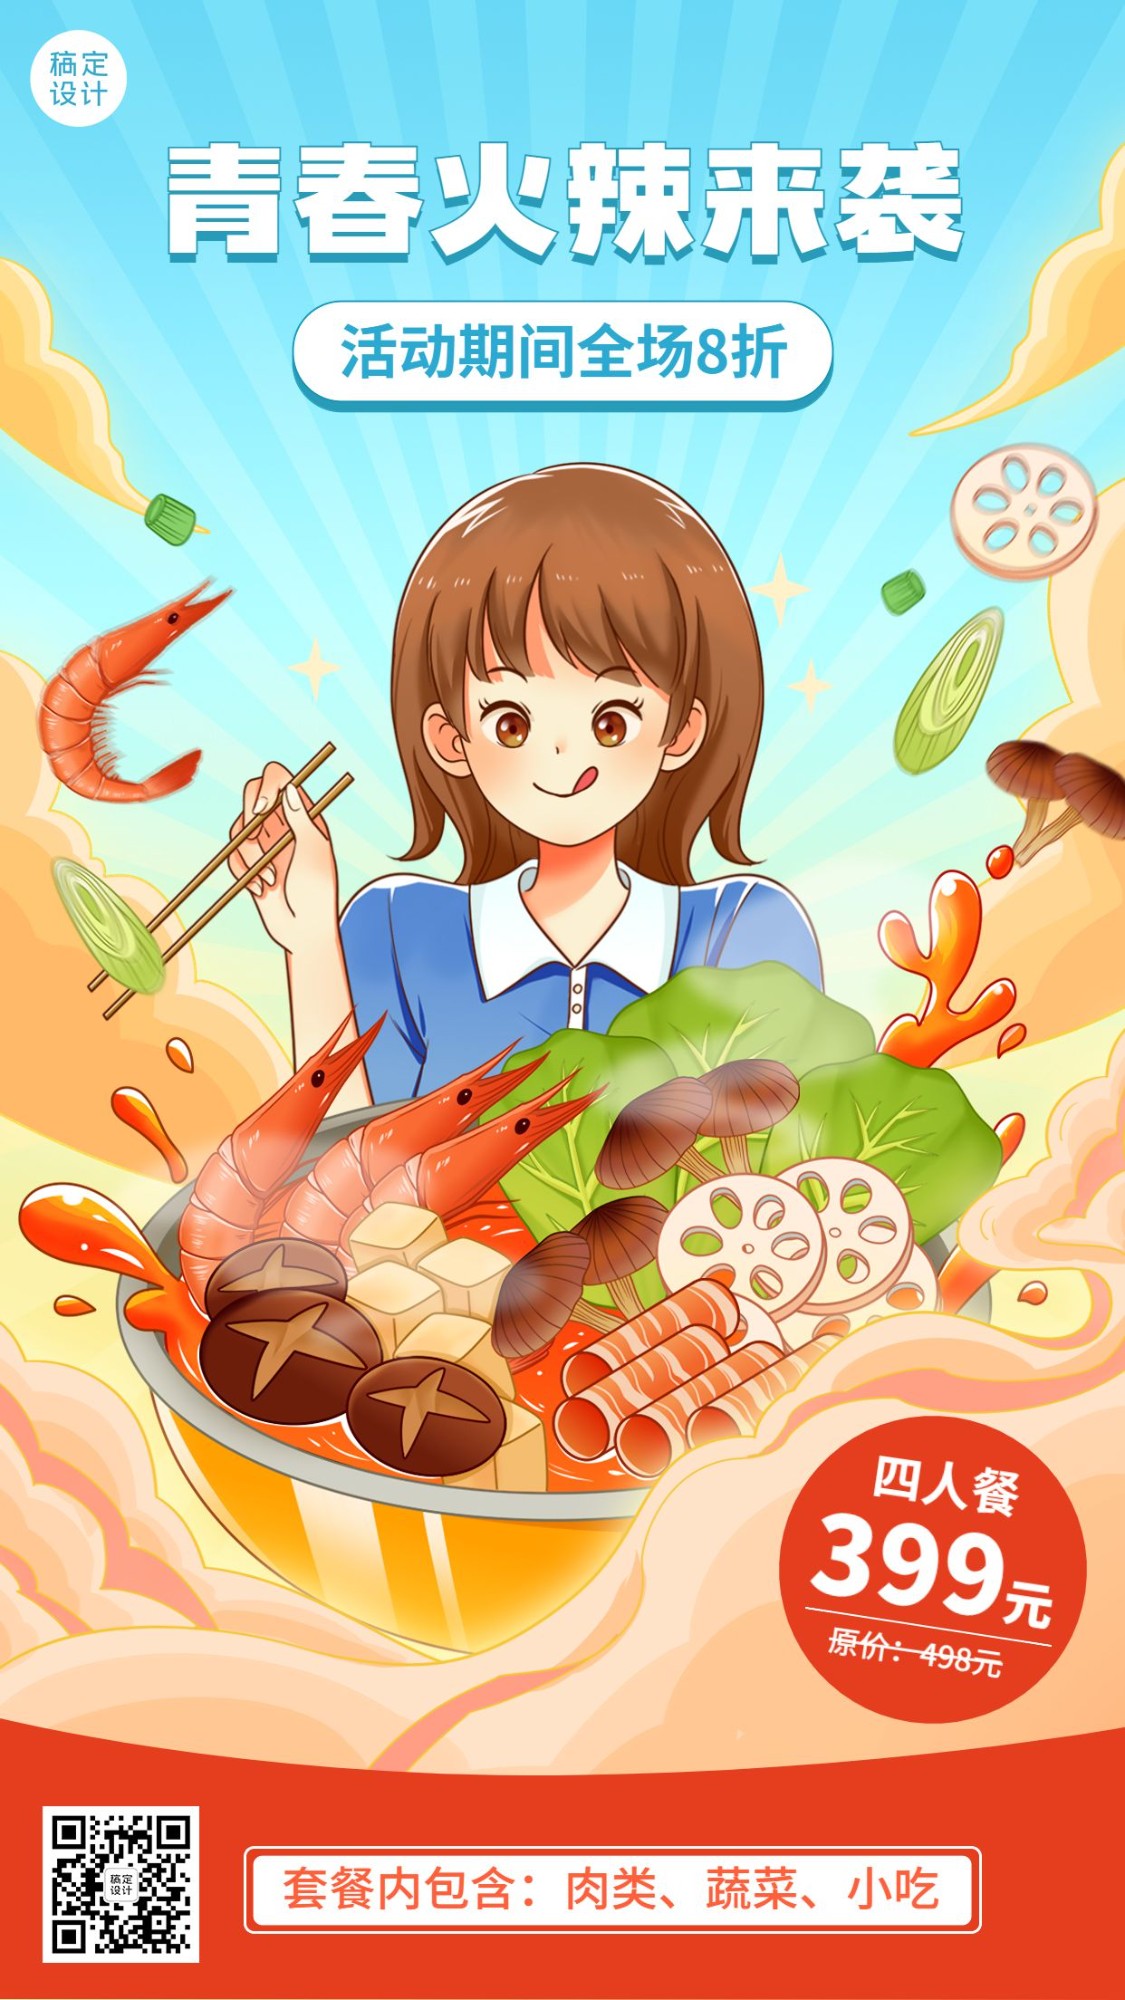 五四青年节餐饮火锅产品促销手机海报